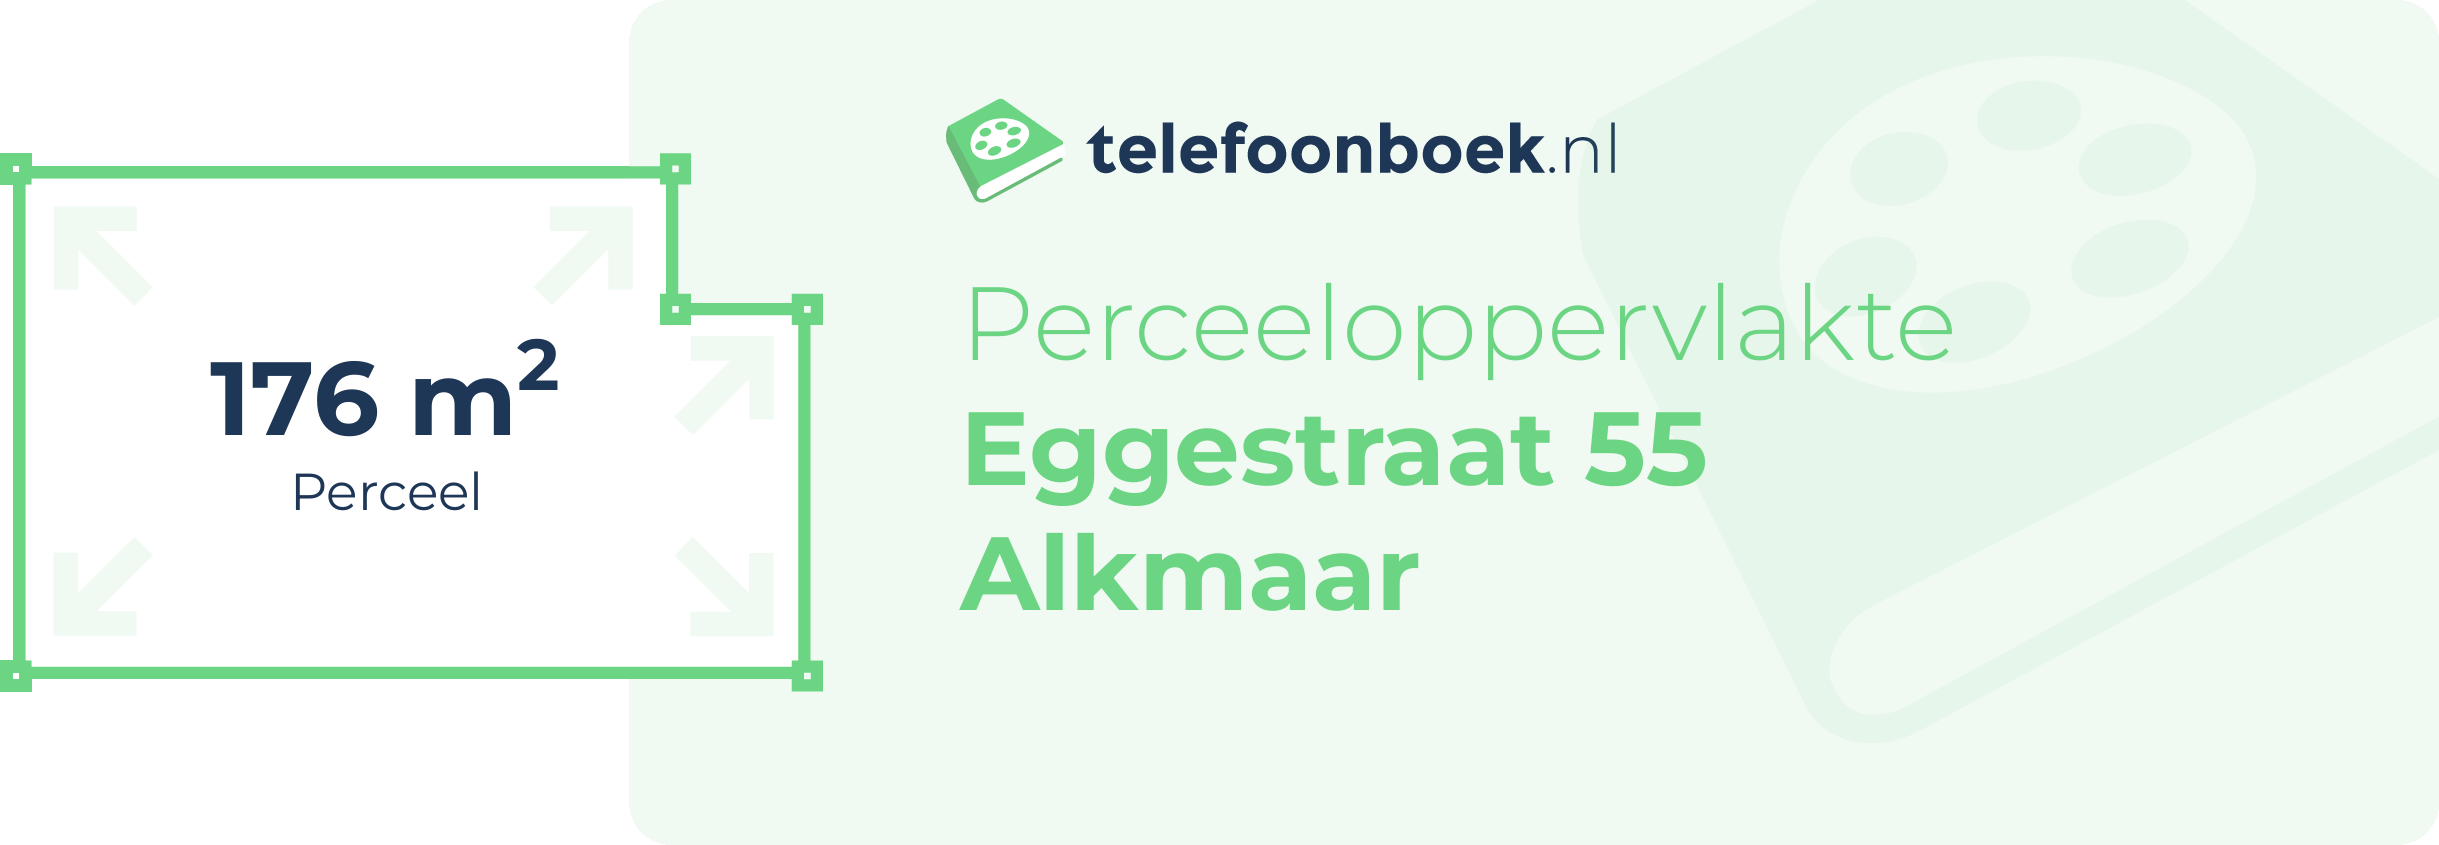 Perceeloppervlakte Eggestraat 55 Alkmaar